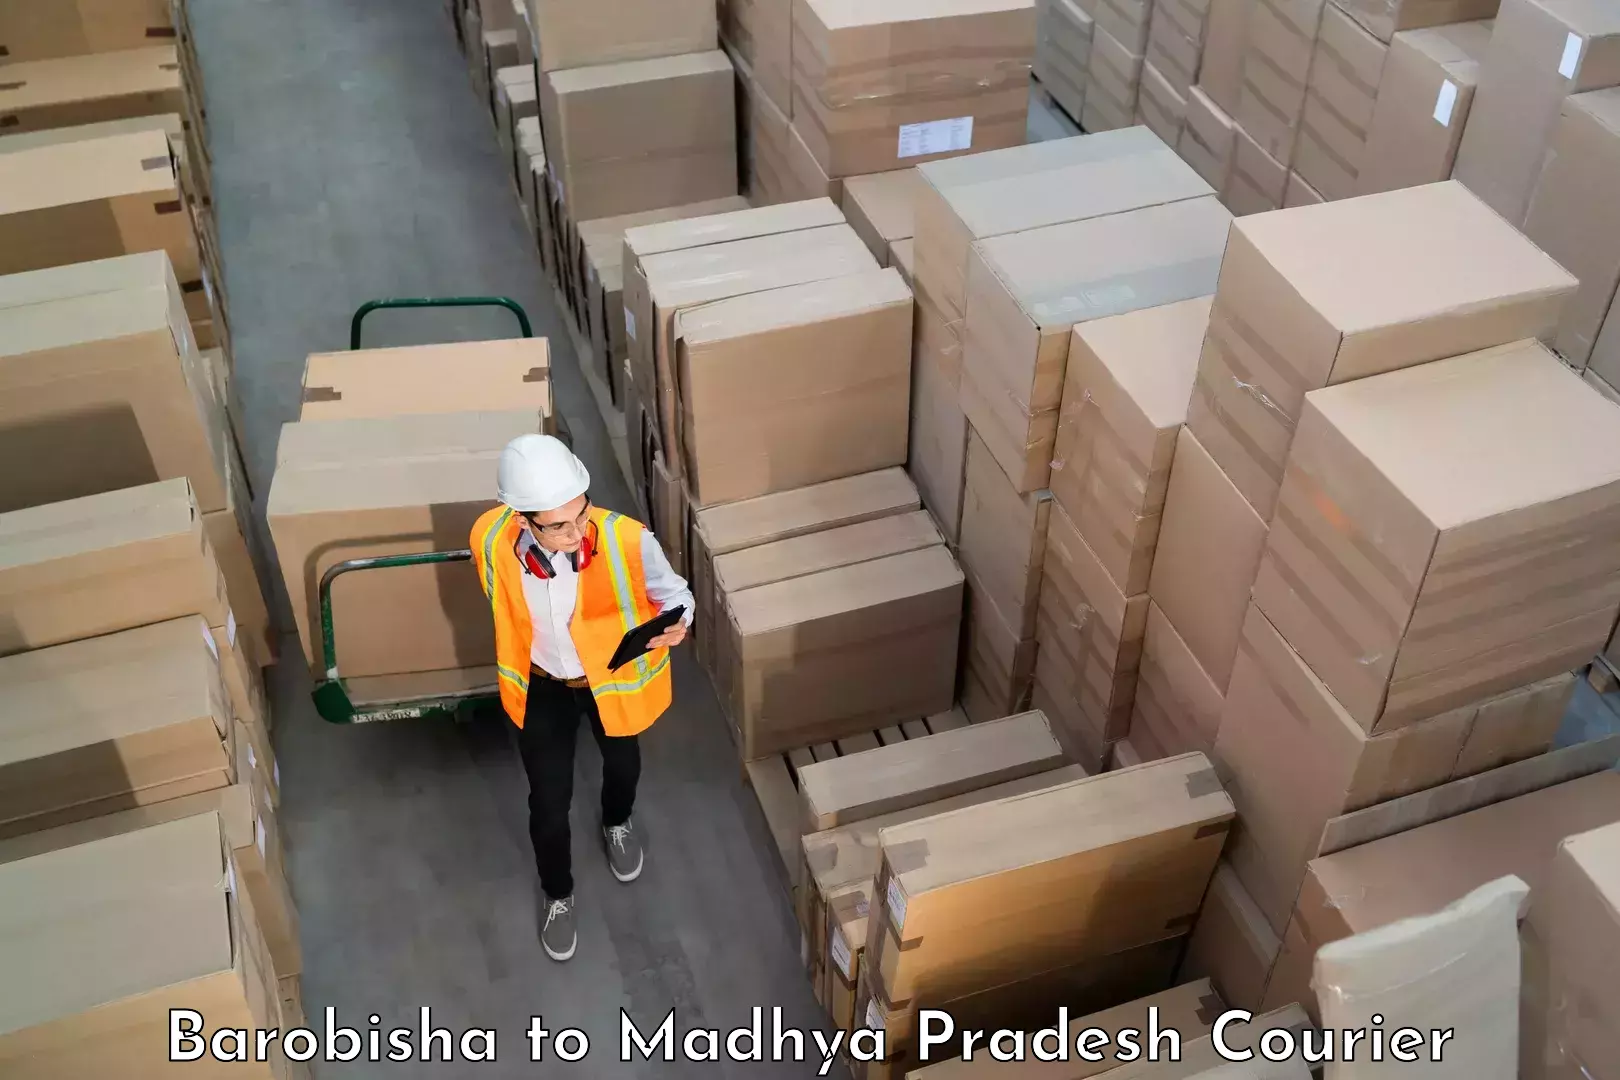 Personal effects shipping Barobisha to IIIT Bhopal